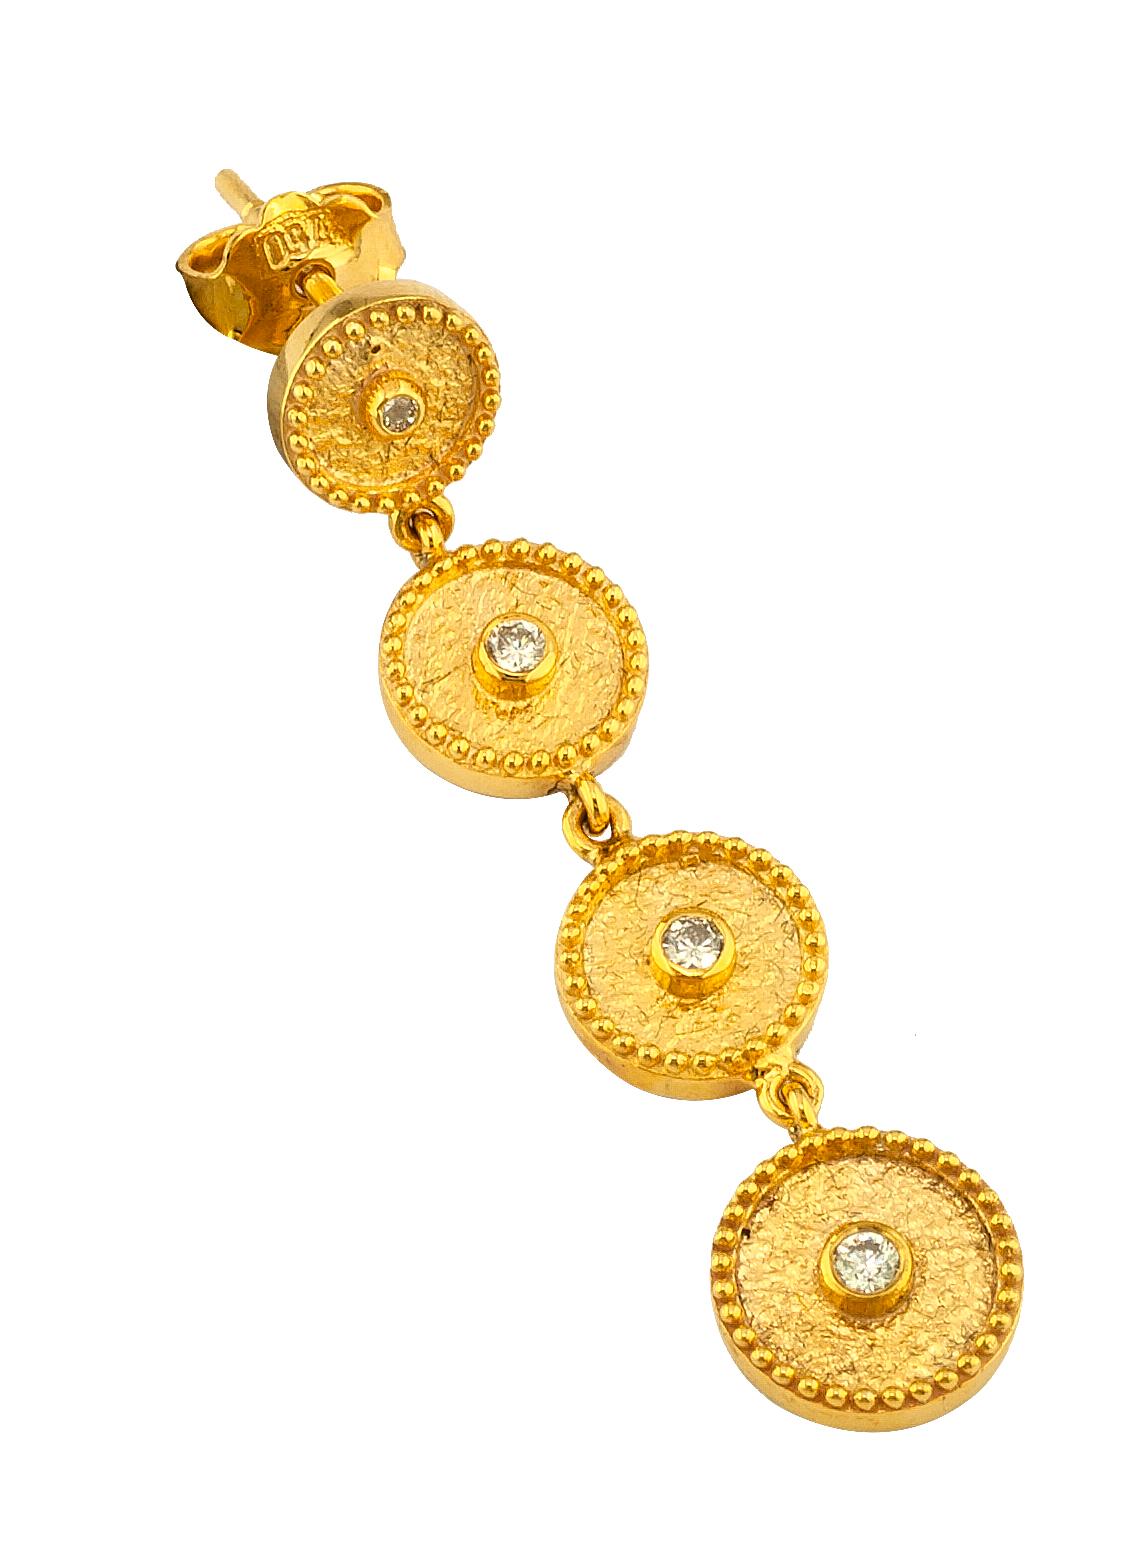 Diese Designer-Ohrringe von S.Georgios sind aus 18 Karat Gelbgold handgefertigt und mit mikroskopischer Granulation im Stil der byzantinischen Ära verziert. Dieses atemberaubende Paar Ohrhänger besteht aus 8 natürlichen weißen Diamanten im